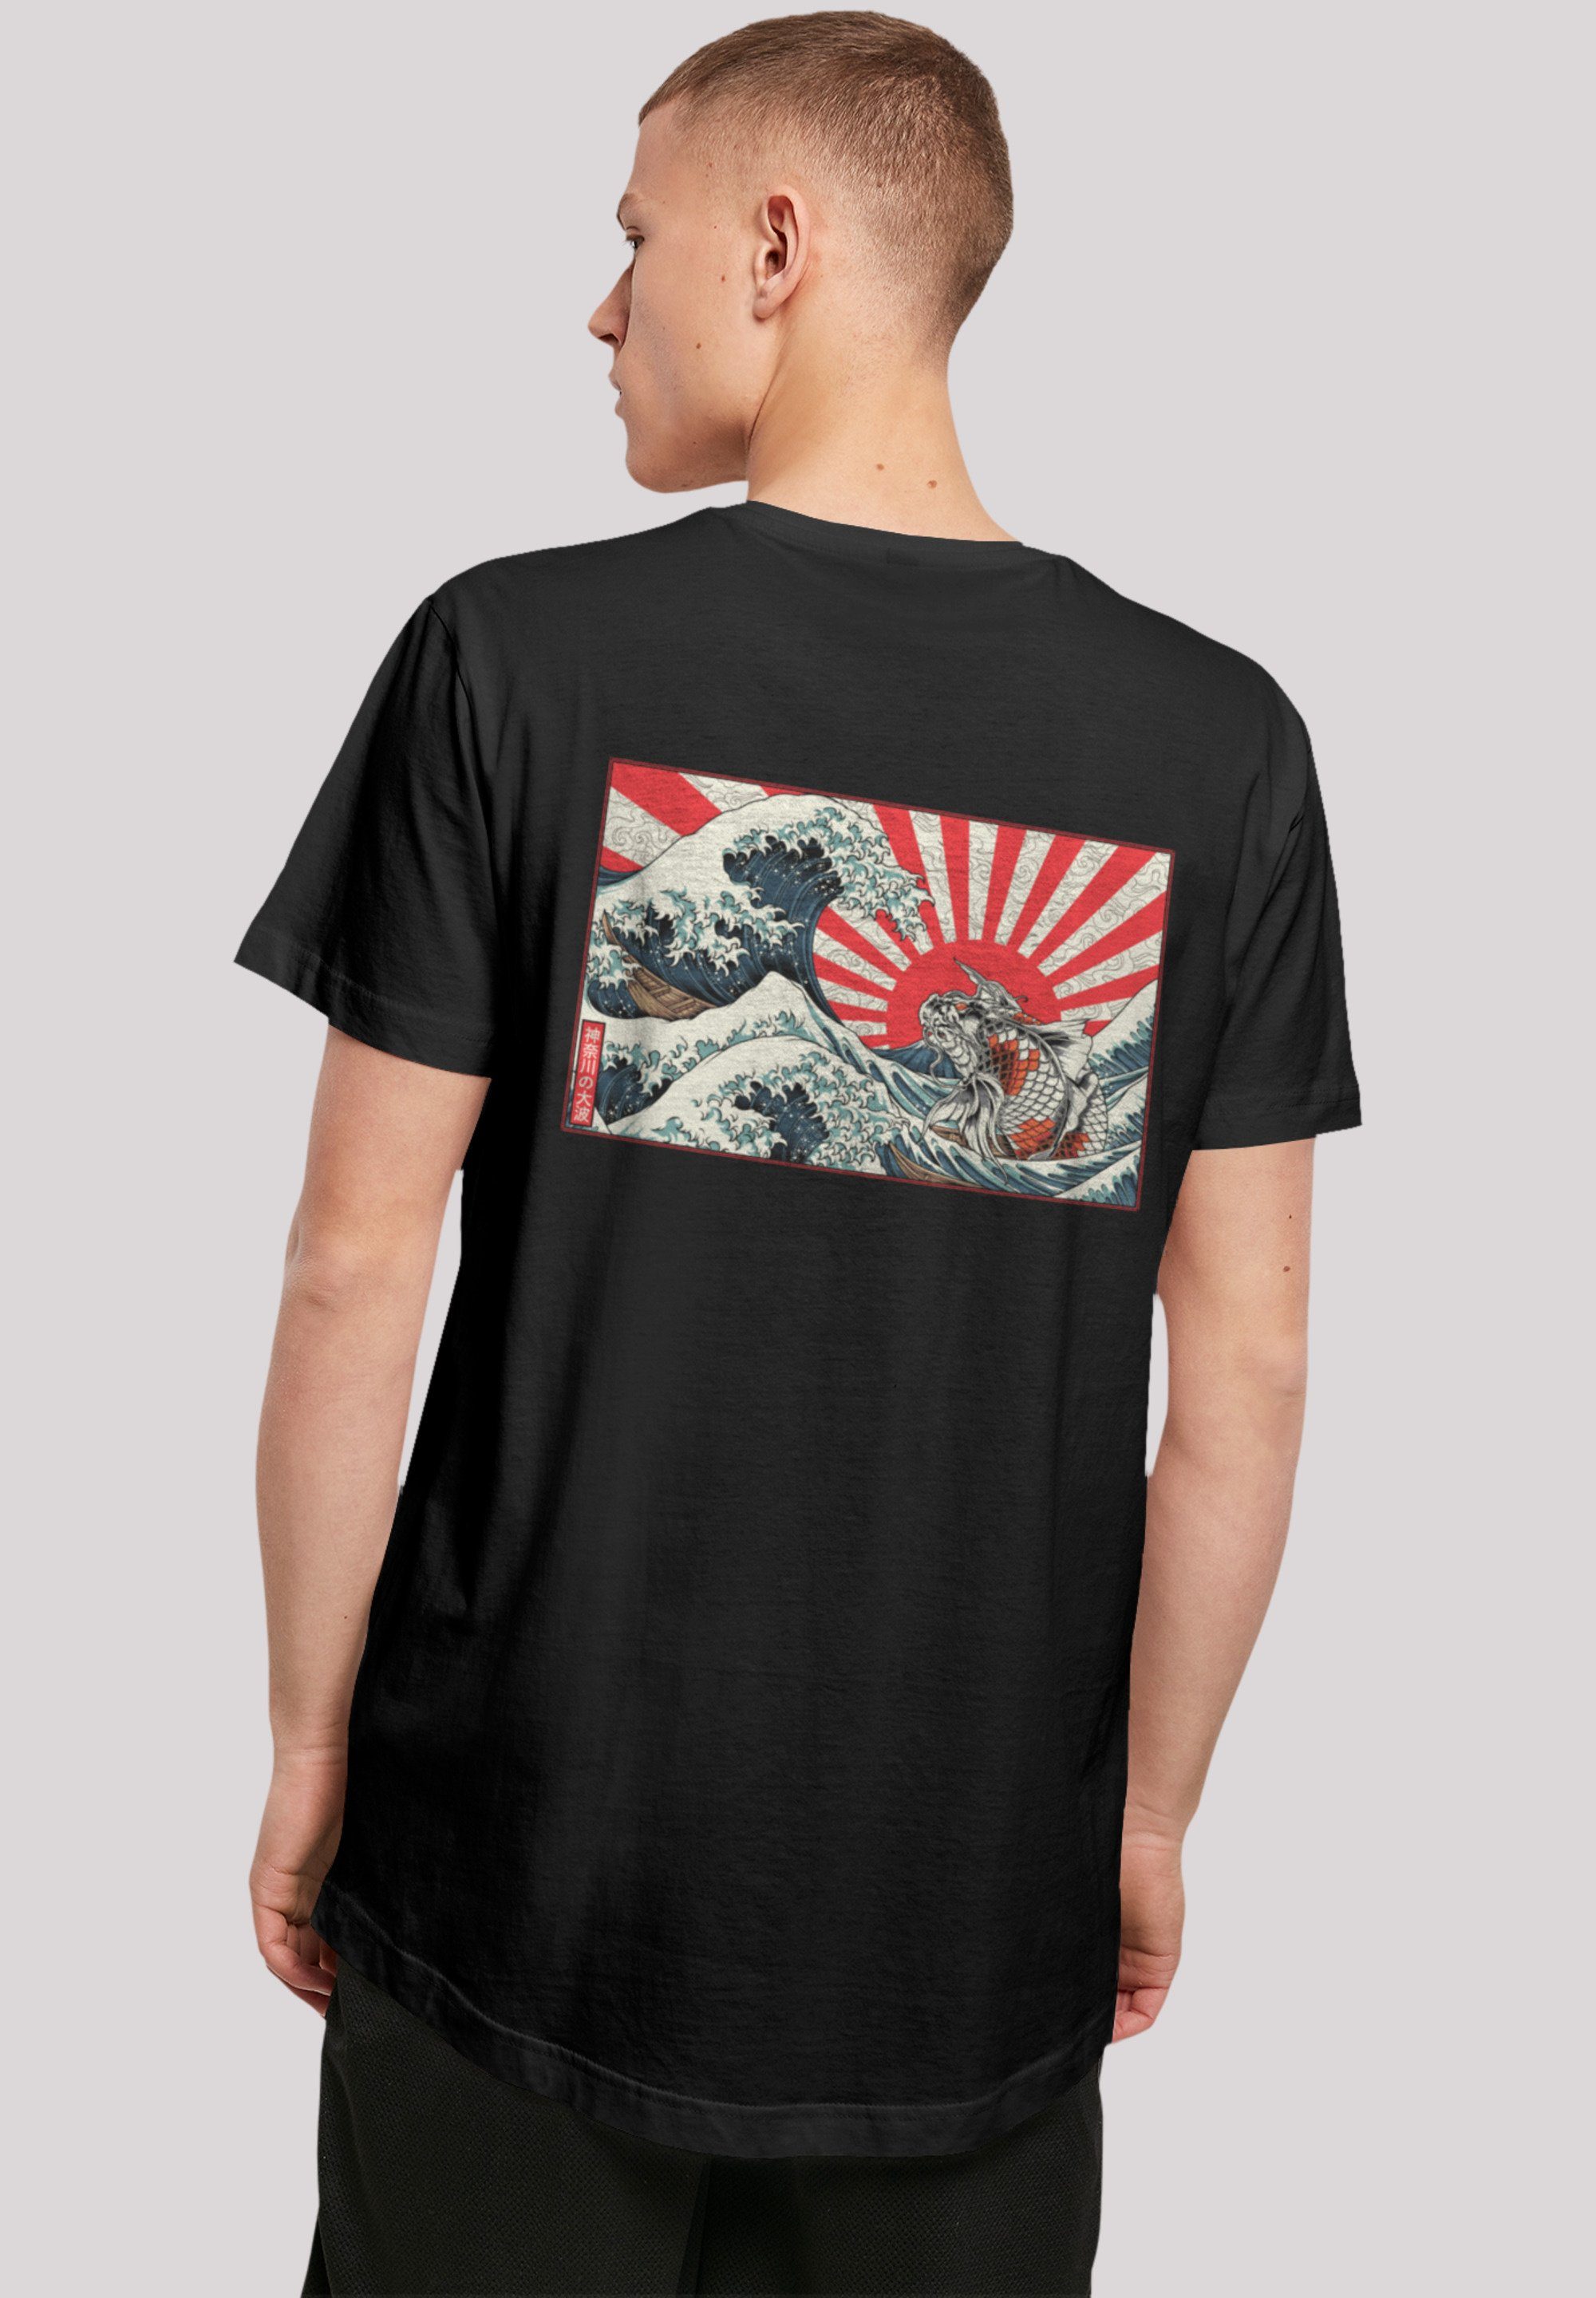 F4NT4STIC T-Shirt Kanagawa Welle Japan Sehr Print, hohem mit weicher Tragekomfort Baumwollstoff